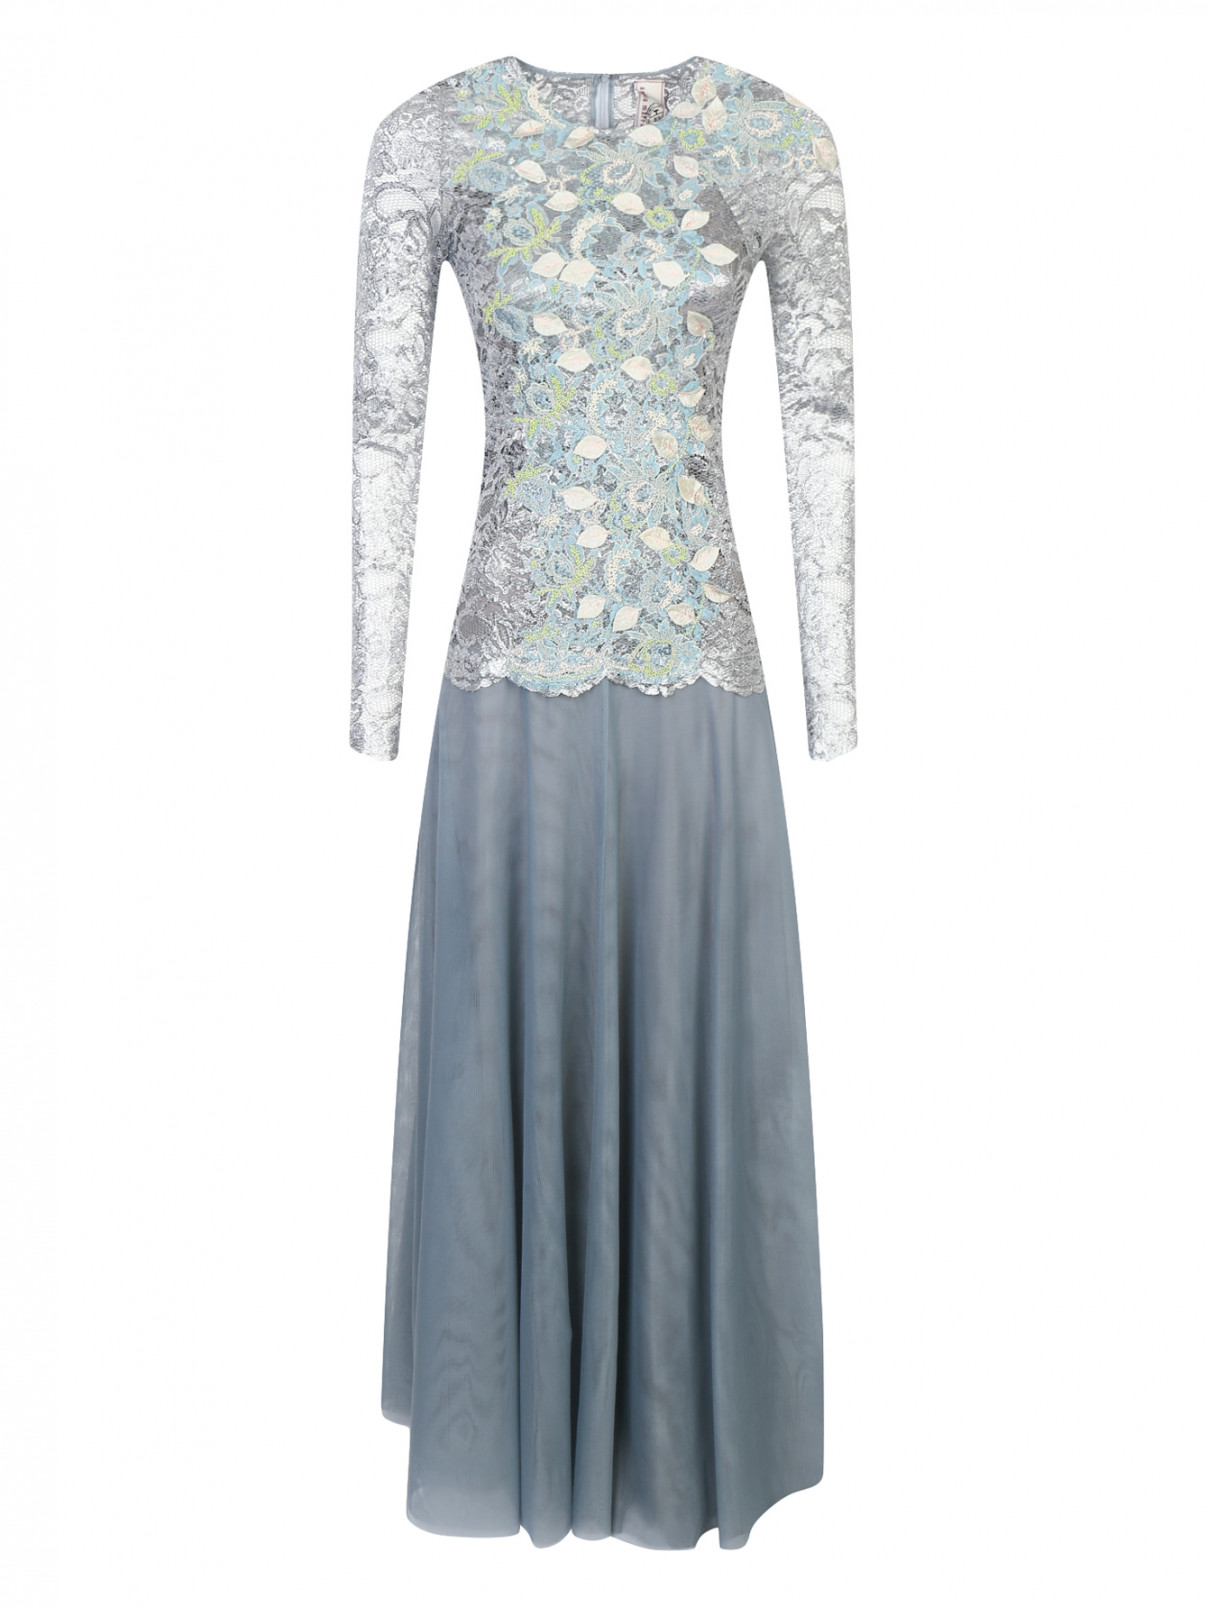 Платье-макси из кружева с декоративной аппликацией Antonio Marras  –  Общий вид  – Цвет:  Мультиколор